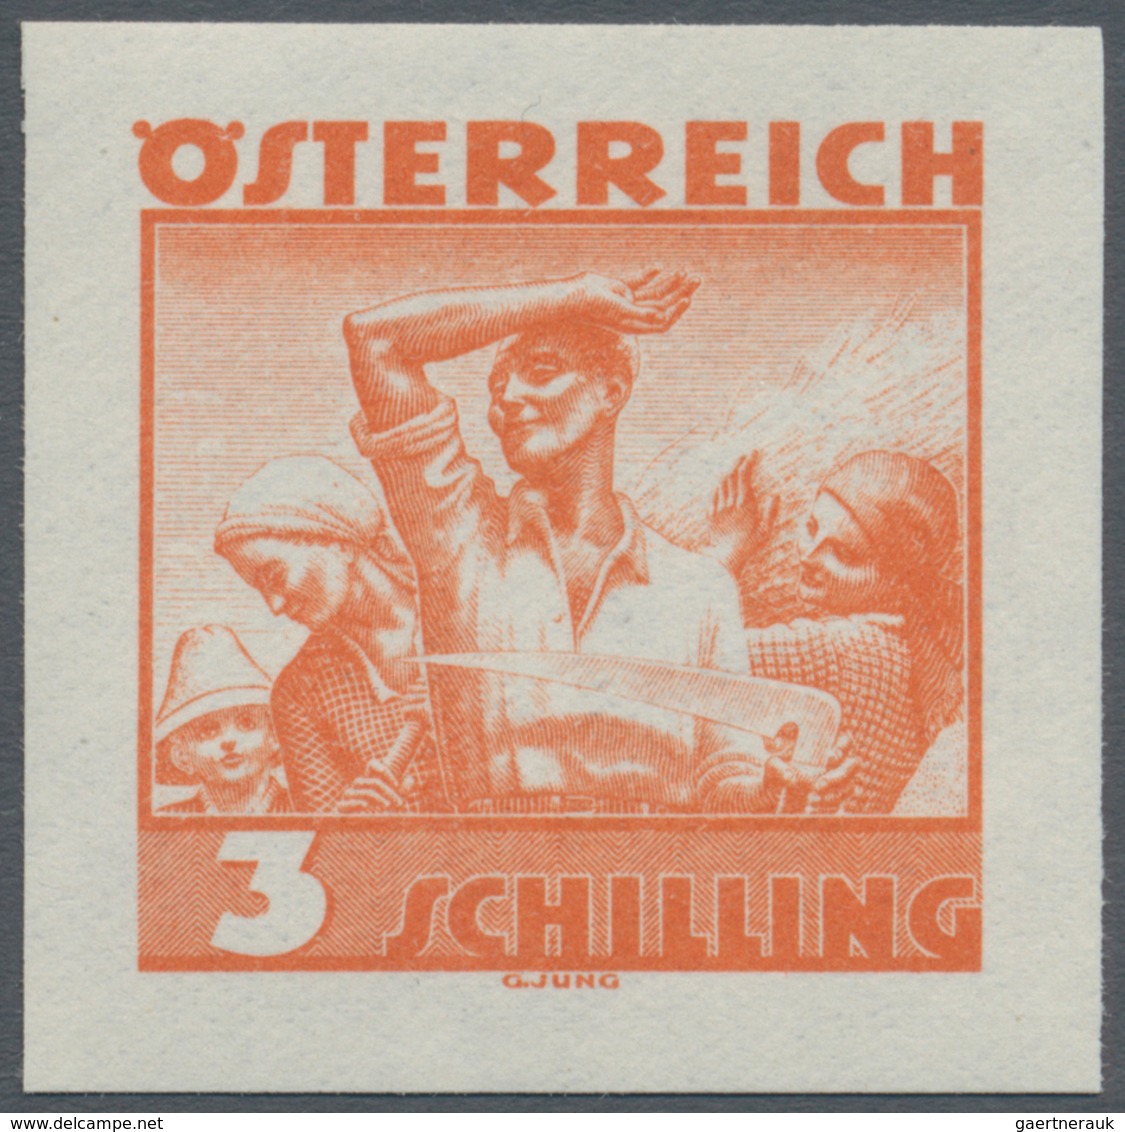 Österreich: 1934, Freimarken "Trachten", 3 Sch. "Ländliche Arbeit", sechs ungezähnte Offsetdruck-Pro